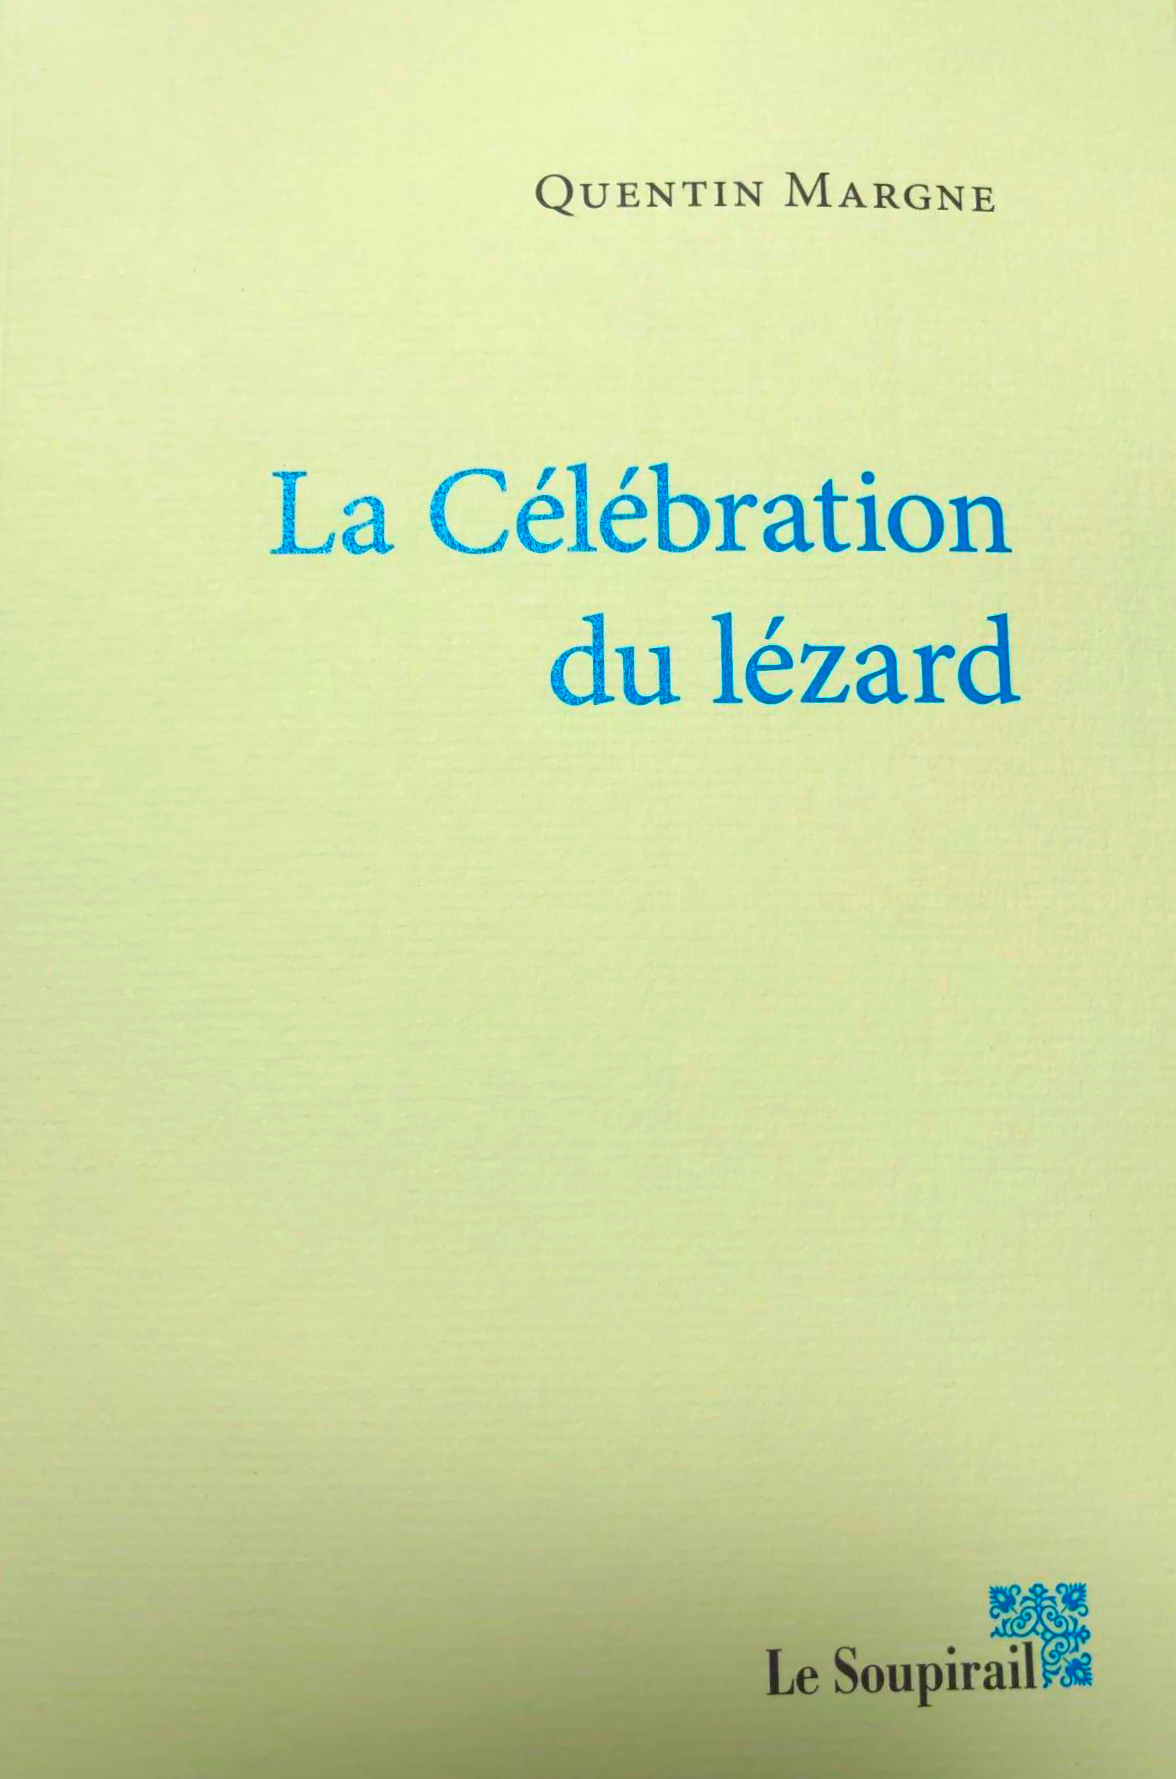 20210430 QUENTIN MARGNE La Celebration du Lezard 01